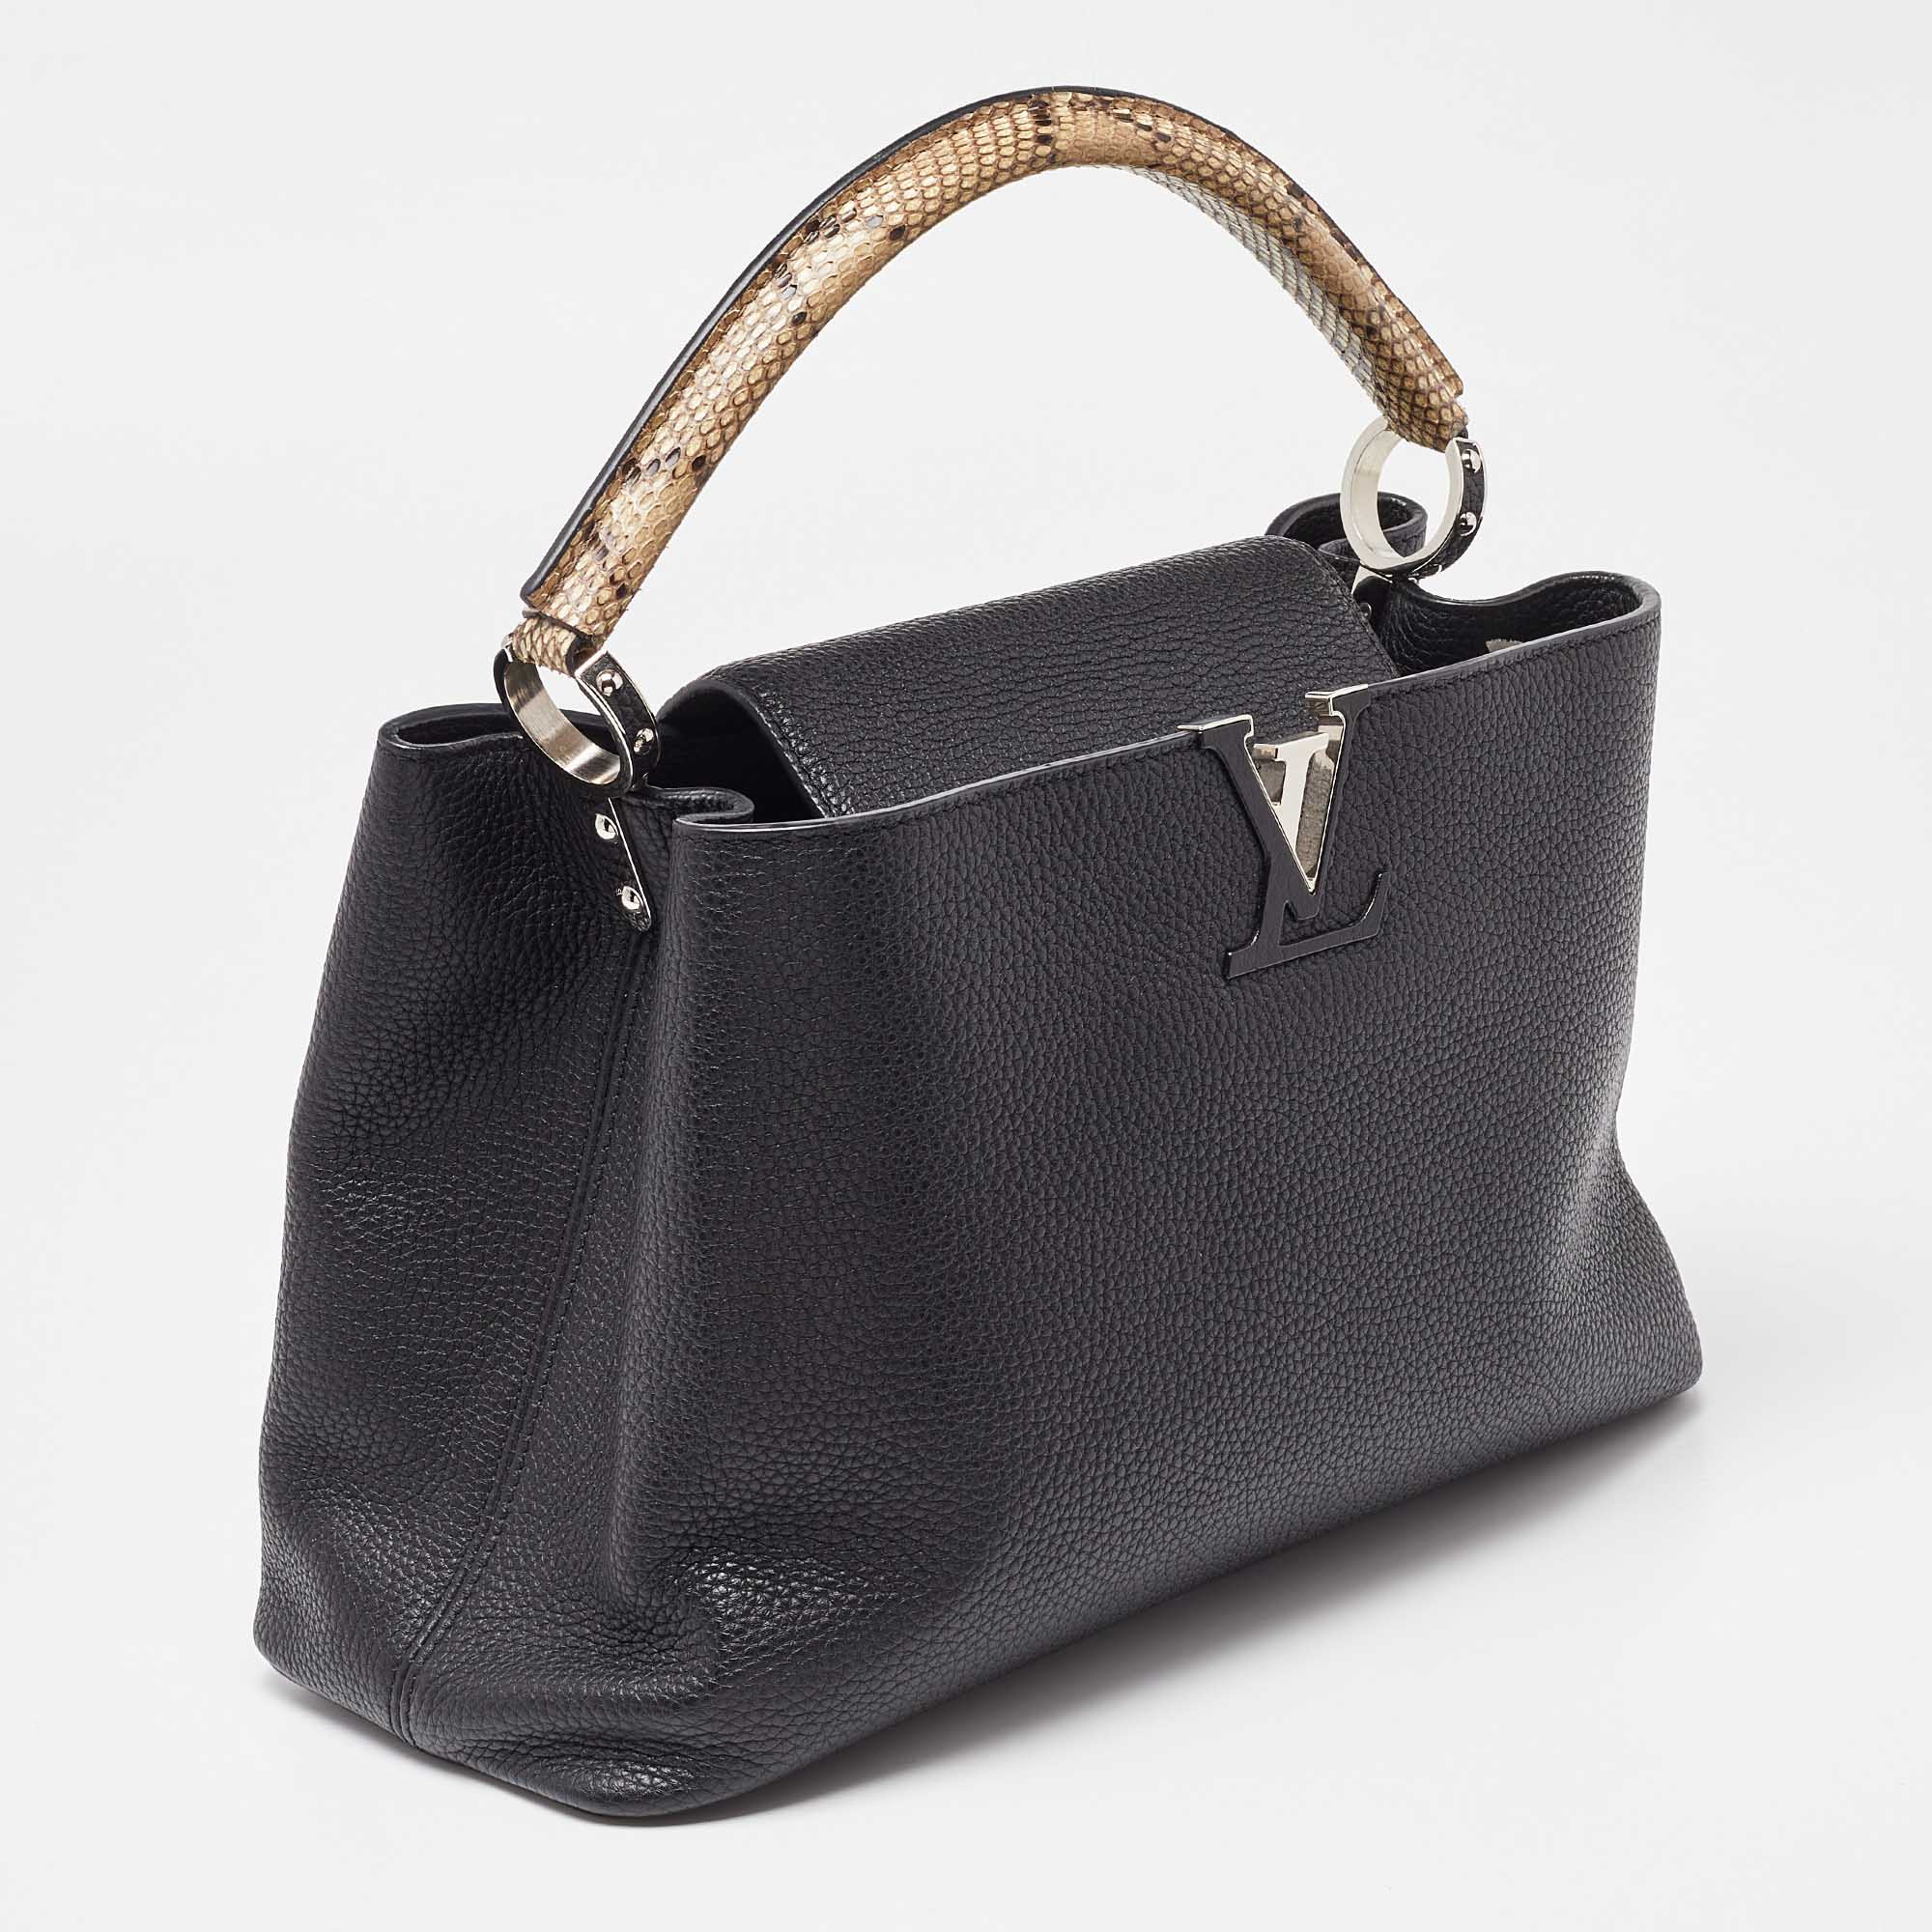 Louis Vuitton Black Leather Capucines MM Bag